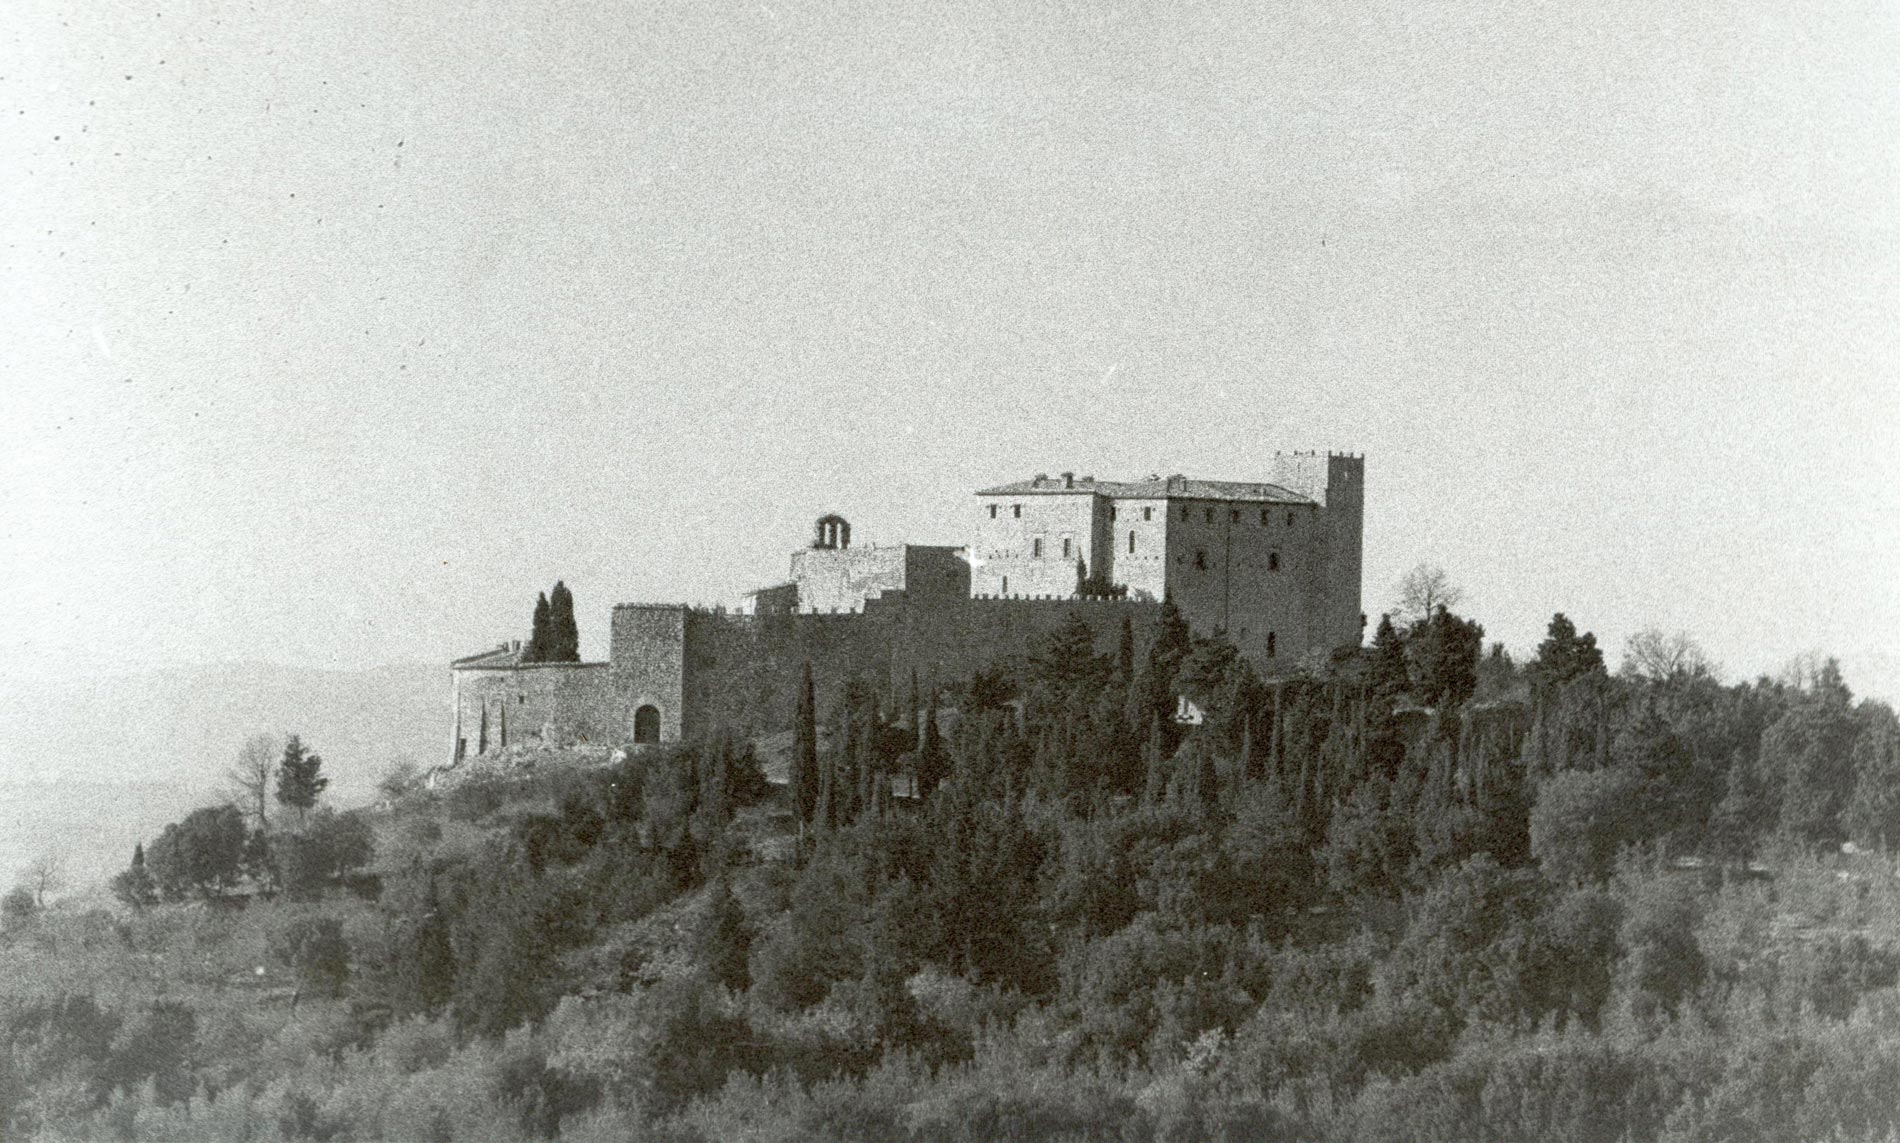 Castello del Poggio